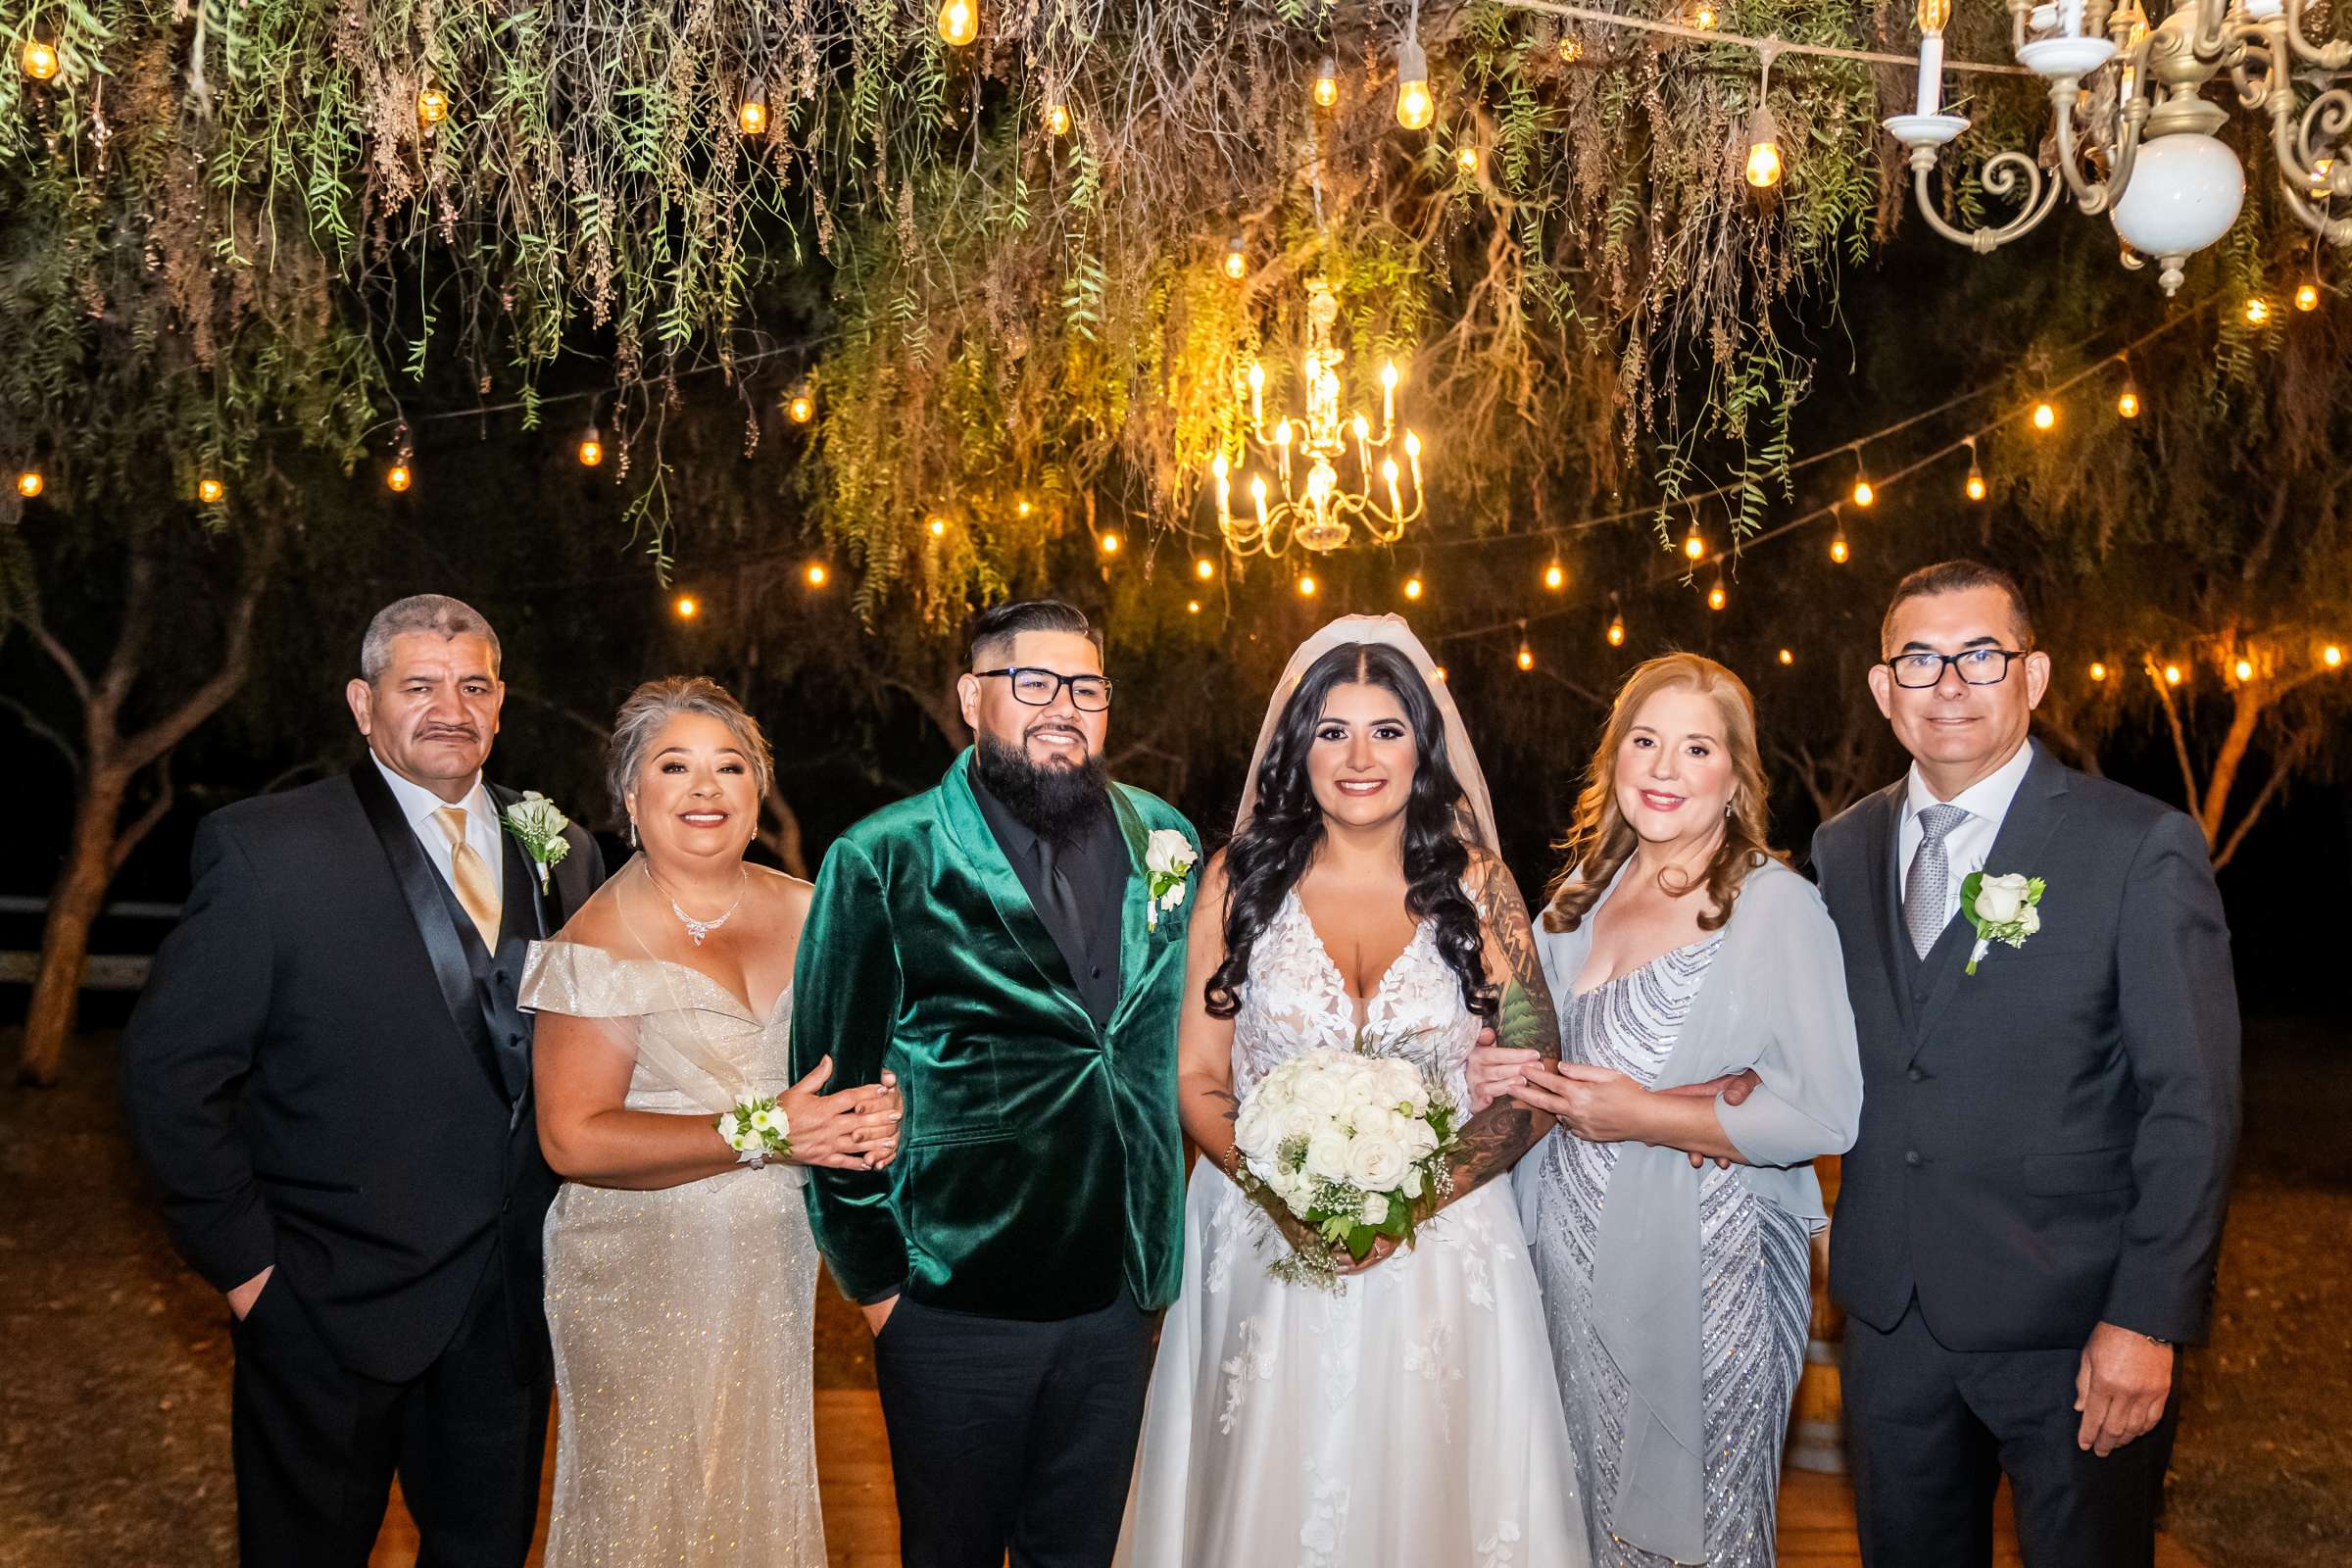 La Hacienda Wedding, Ashley and Alvaro Wedding Photo #14 by True Photography